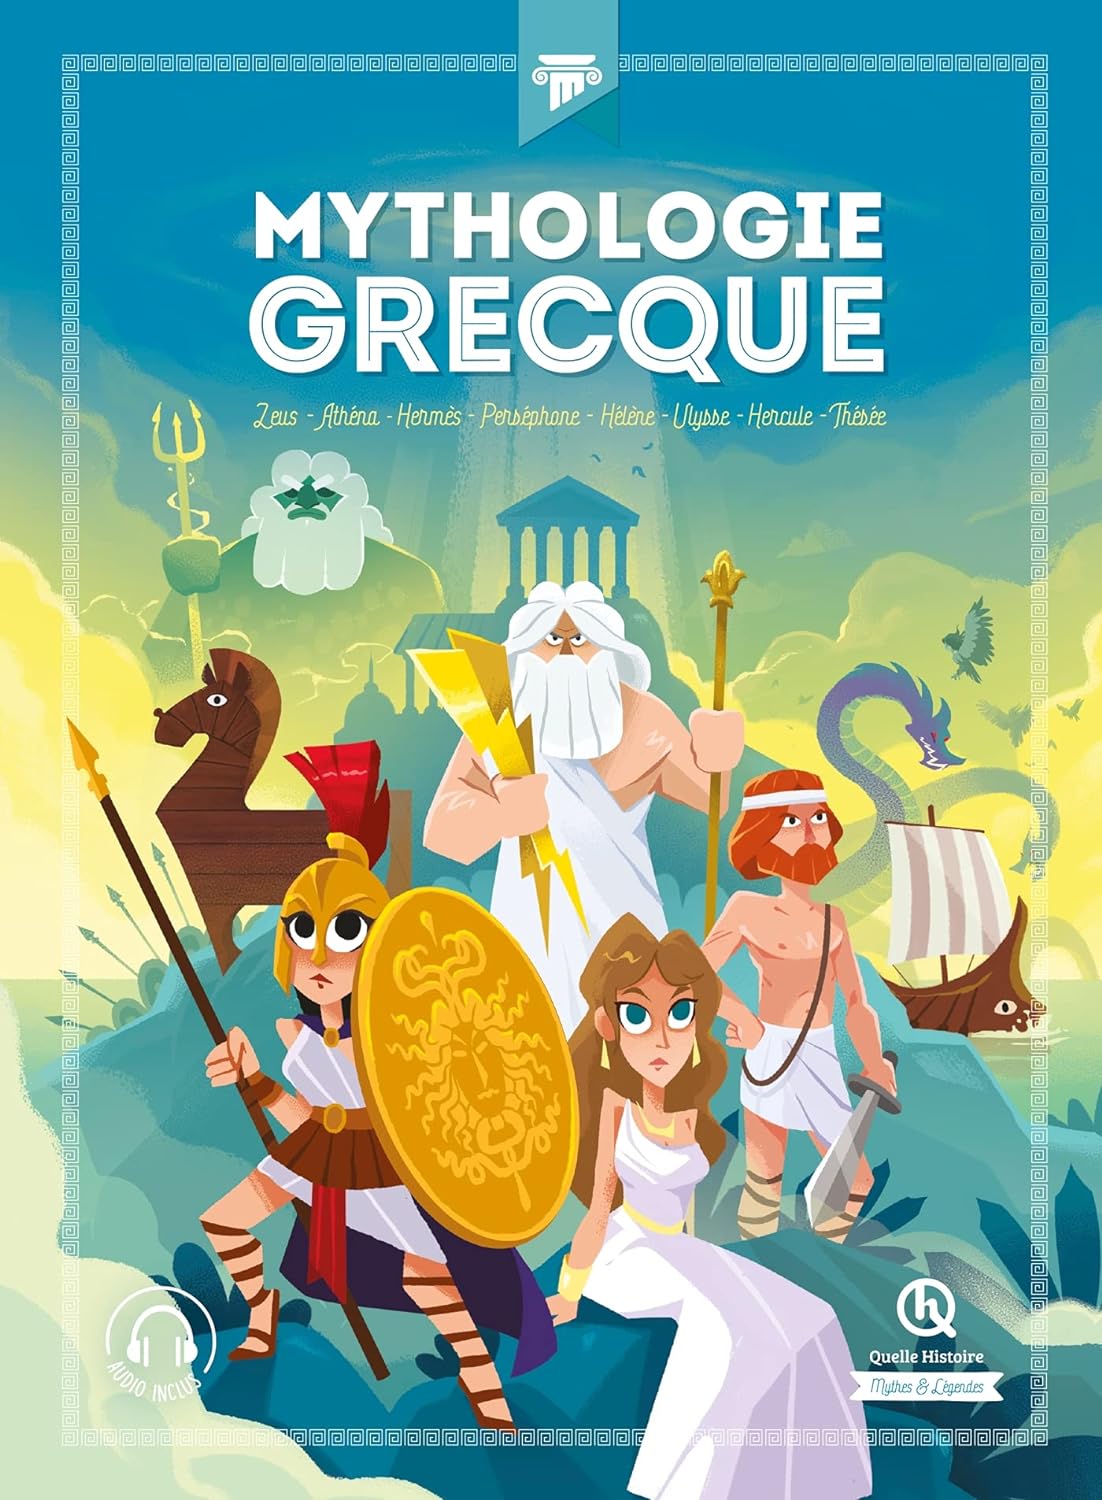 Découvrez l'intégrale de la mythologie grecque : plongez dans un univers fascinant de dieux, héros et monstres légendaires